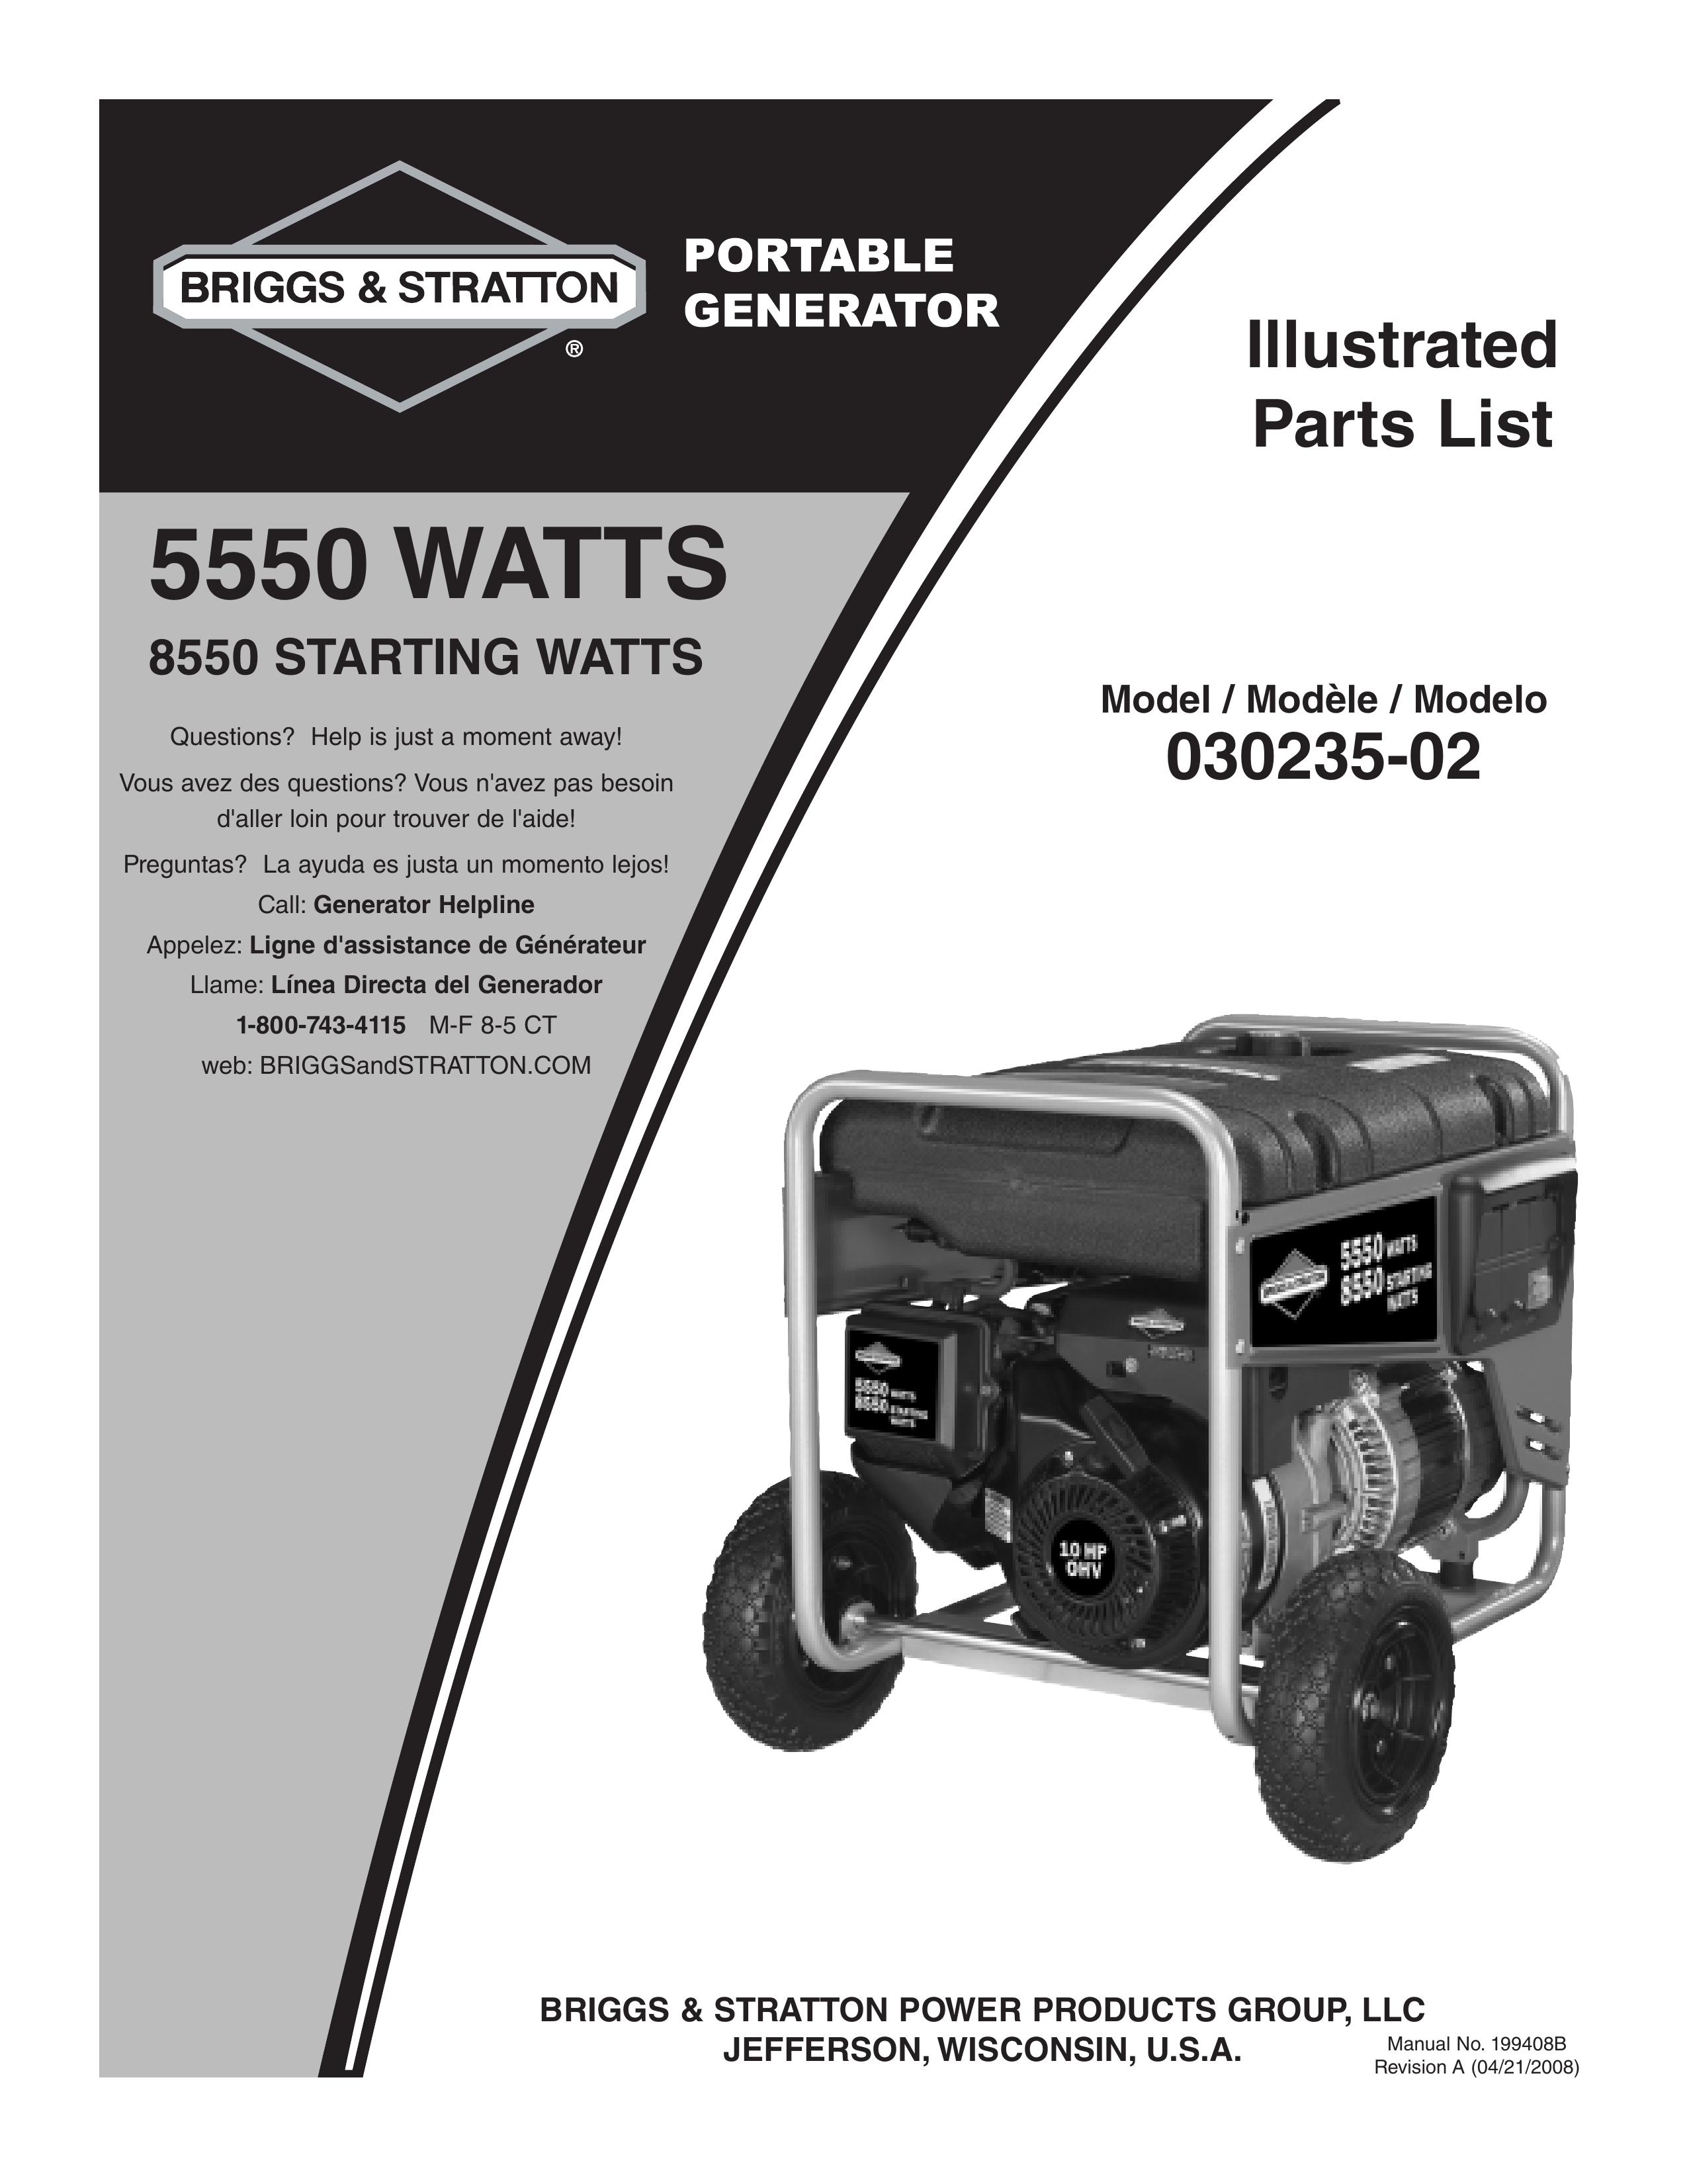 Briggs & Stratton 030235-02 Portable Generator User Manual